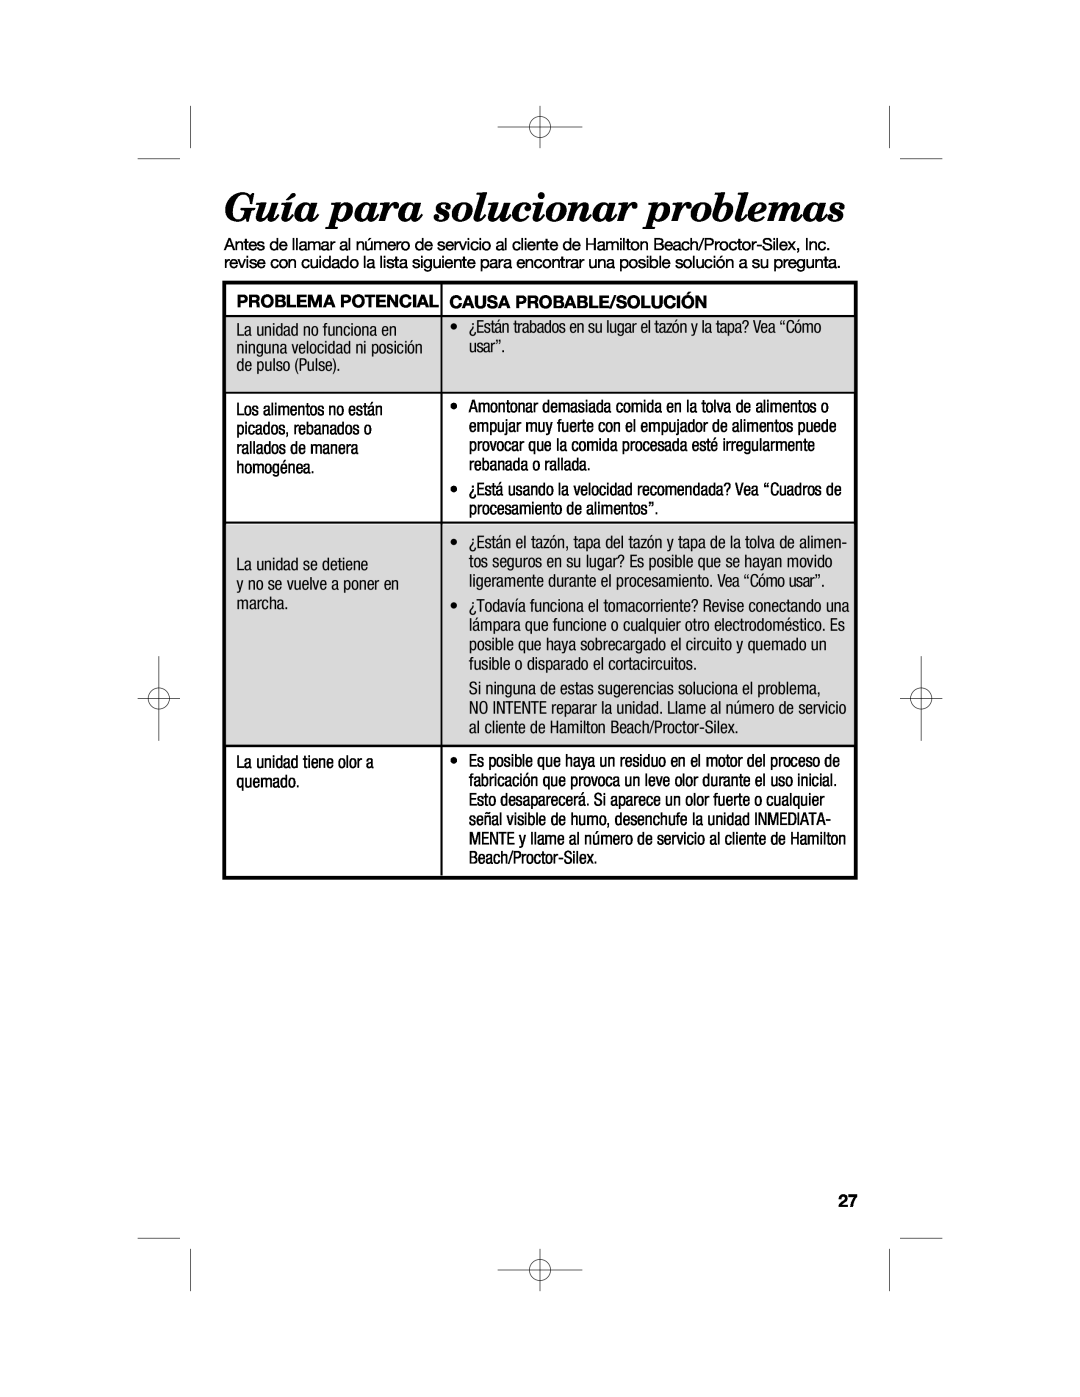 Hamilton Beach 70670, 70610 manual Guía para solucionar problemas, Problema Potencial Causa Probable/Solución 